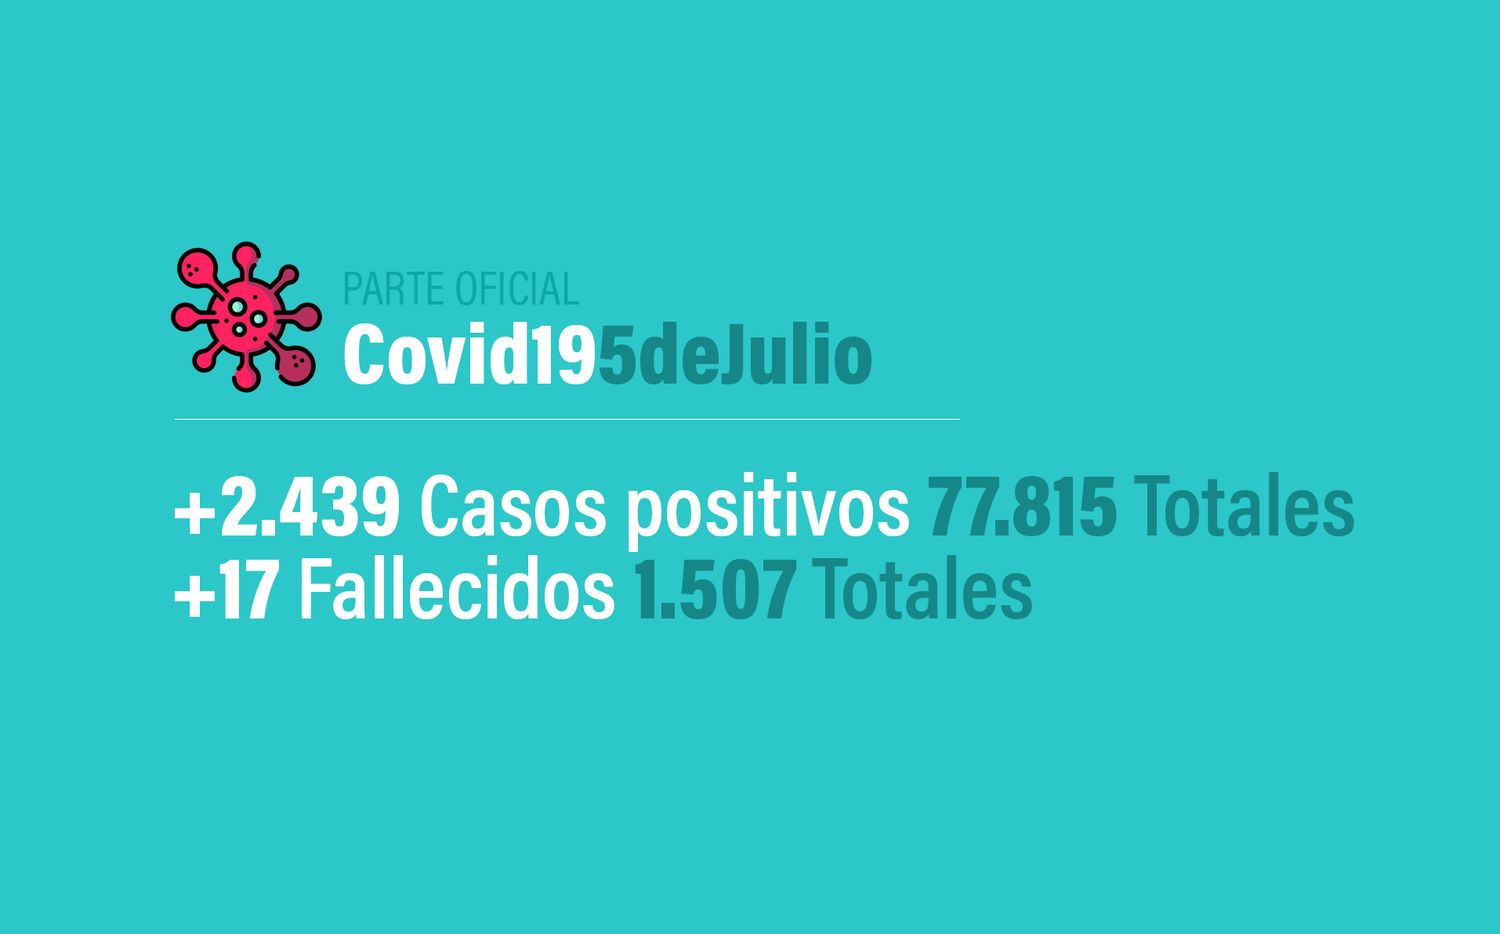 Coronavirus en Argentina: 2439 nuevos casos, 77815 confirmados y  1507 muertes, al 5 de julio